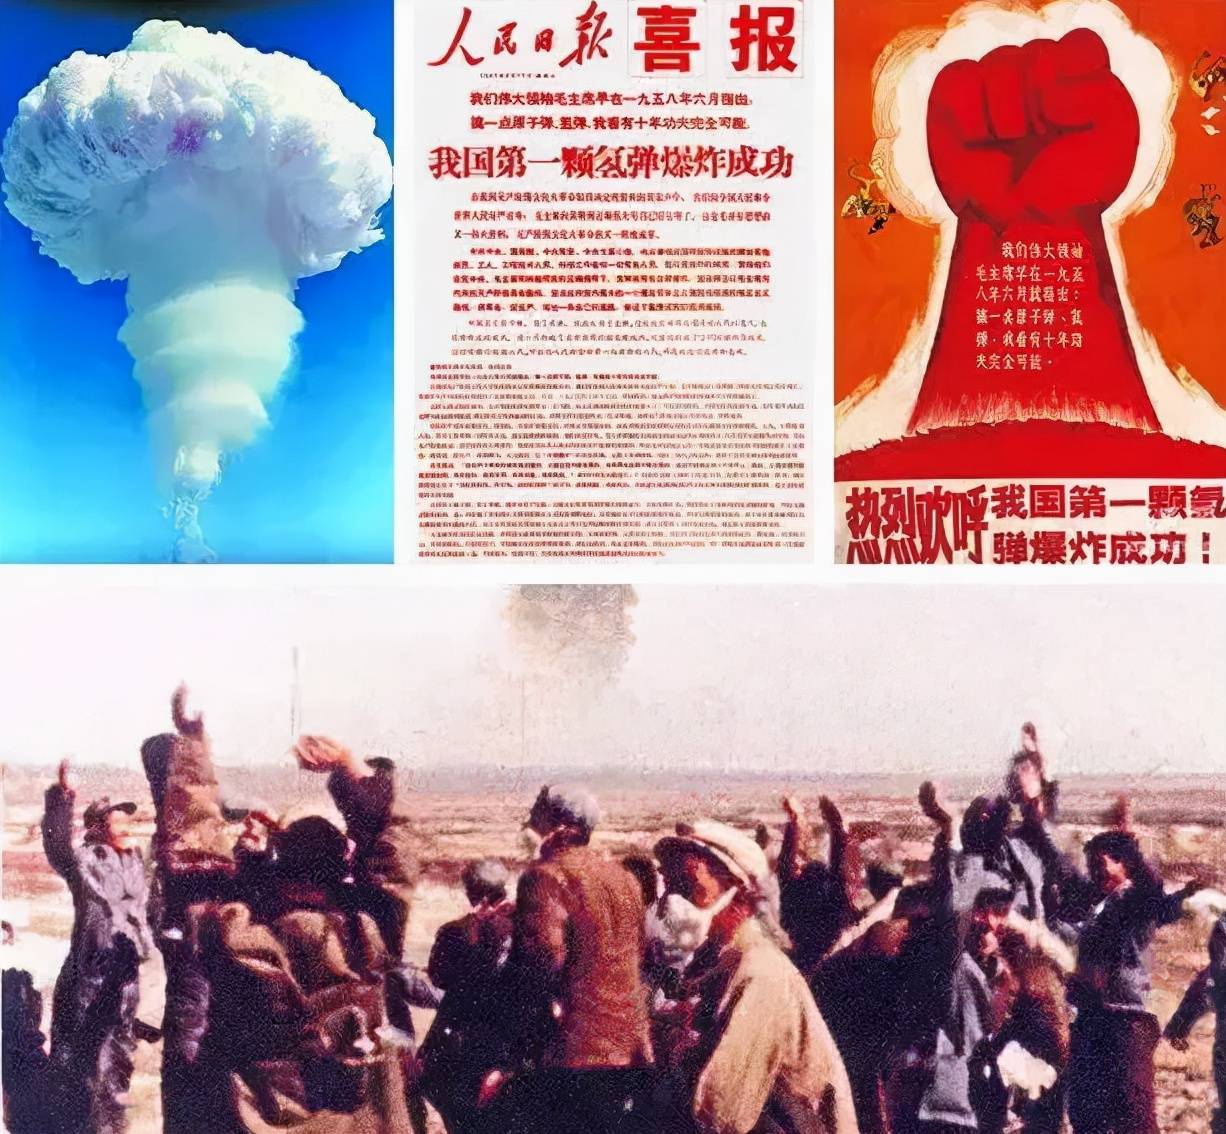 1964年10月16日,中国第一颗原子弹爆炸成功,冲天的一声巨响震惊了世界